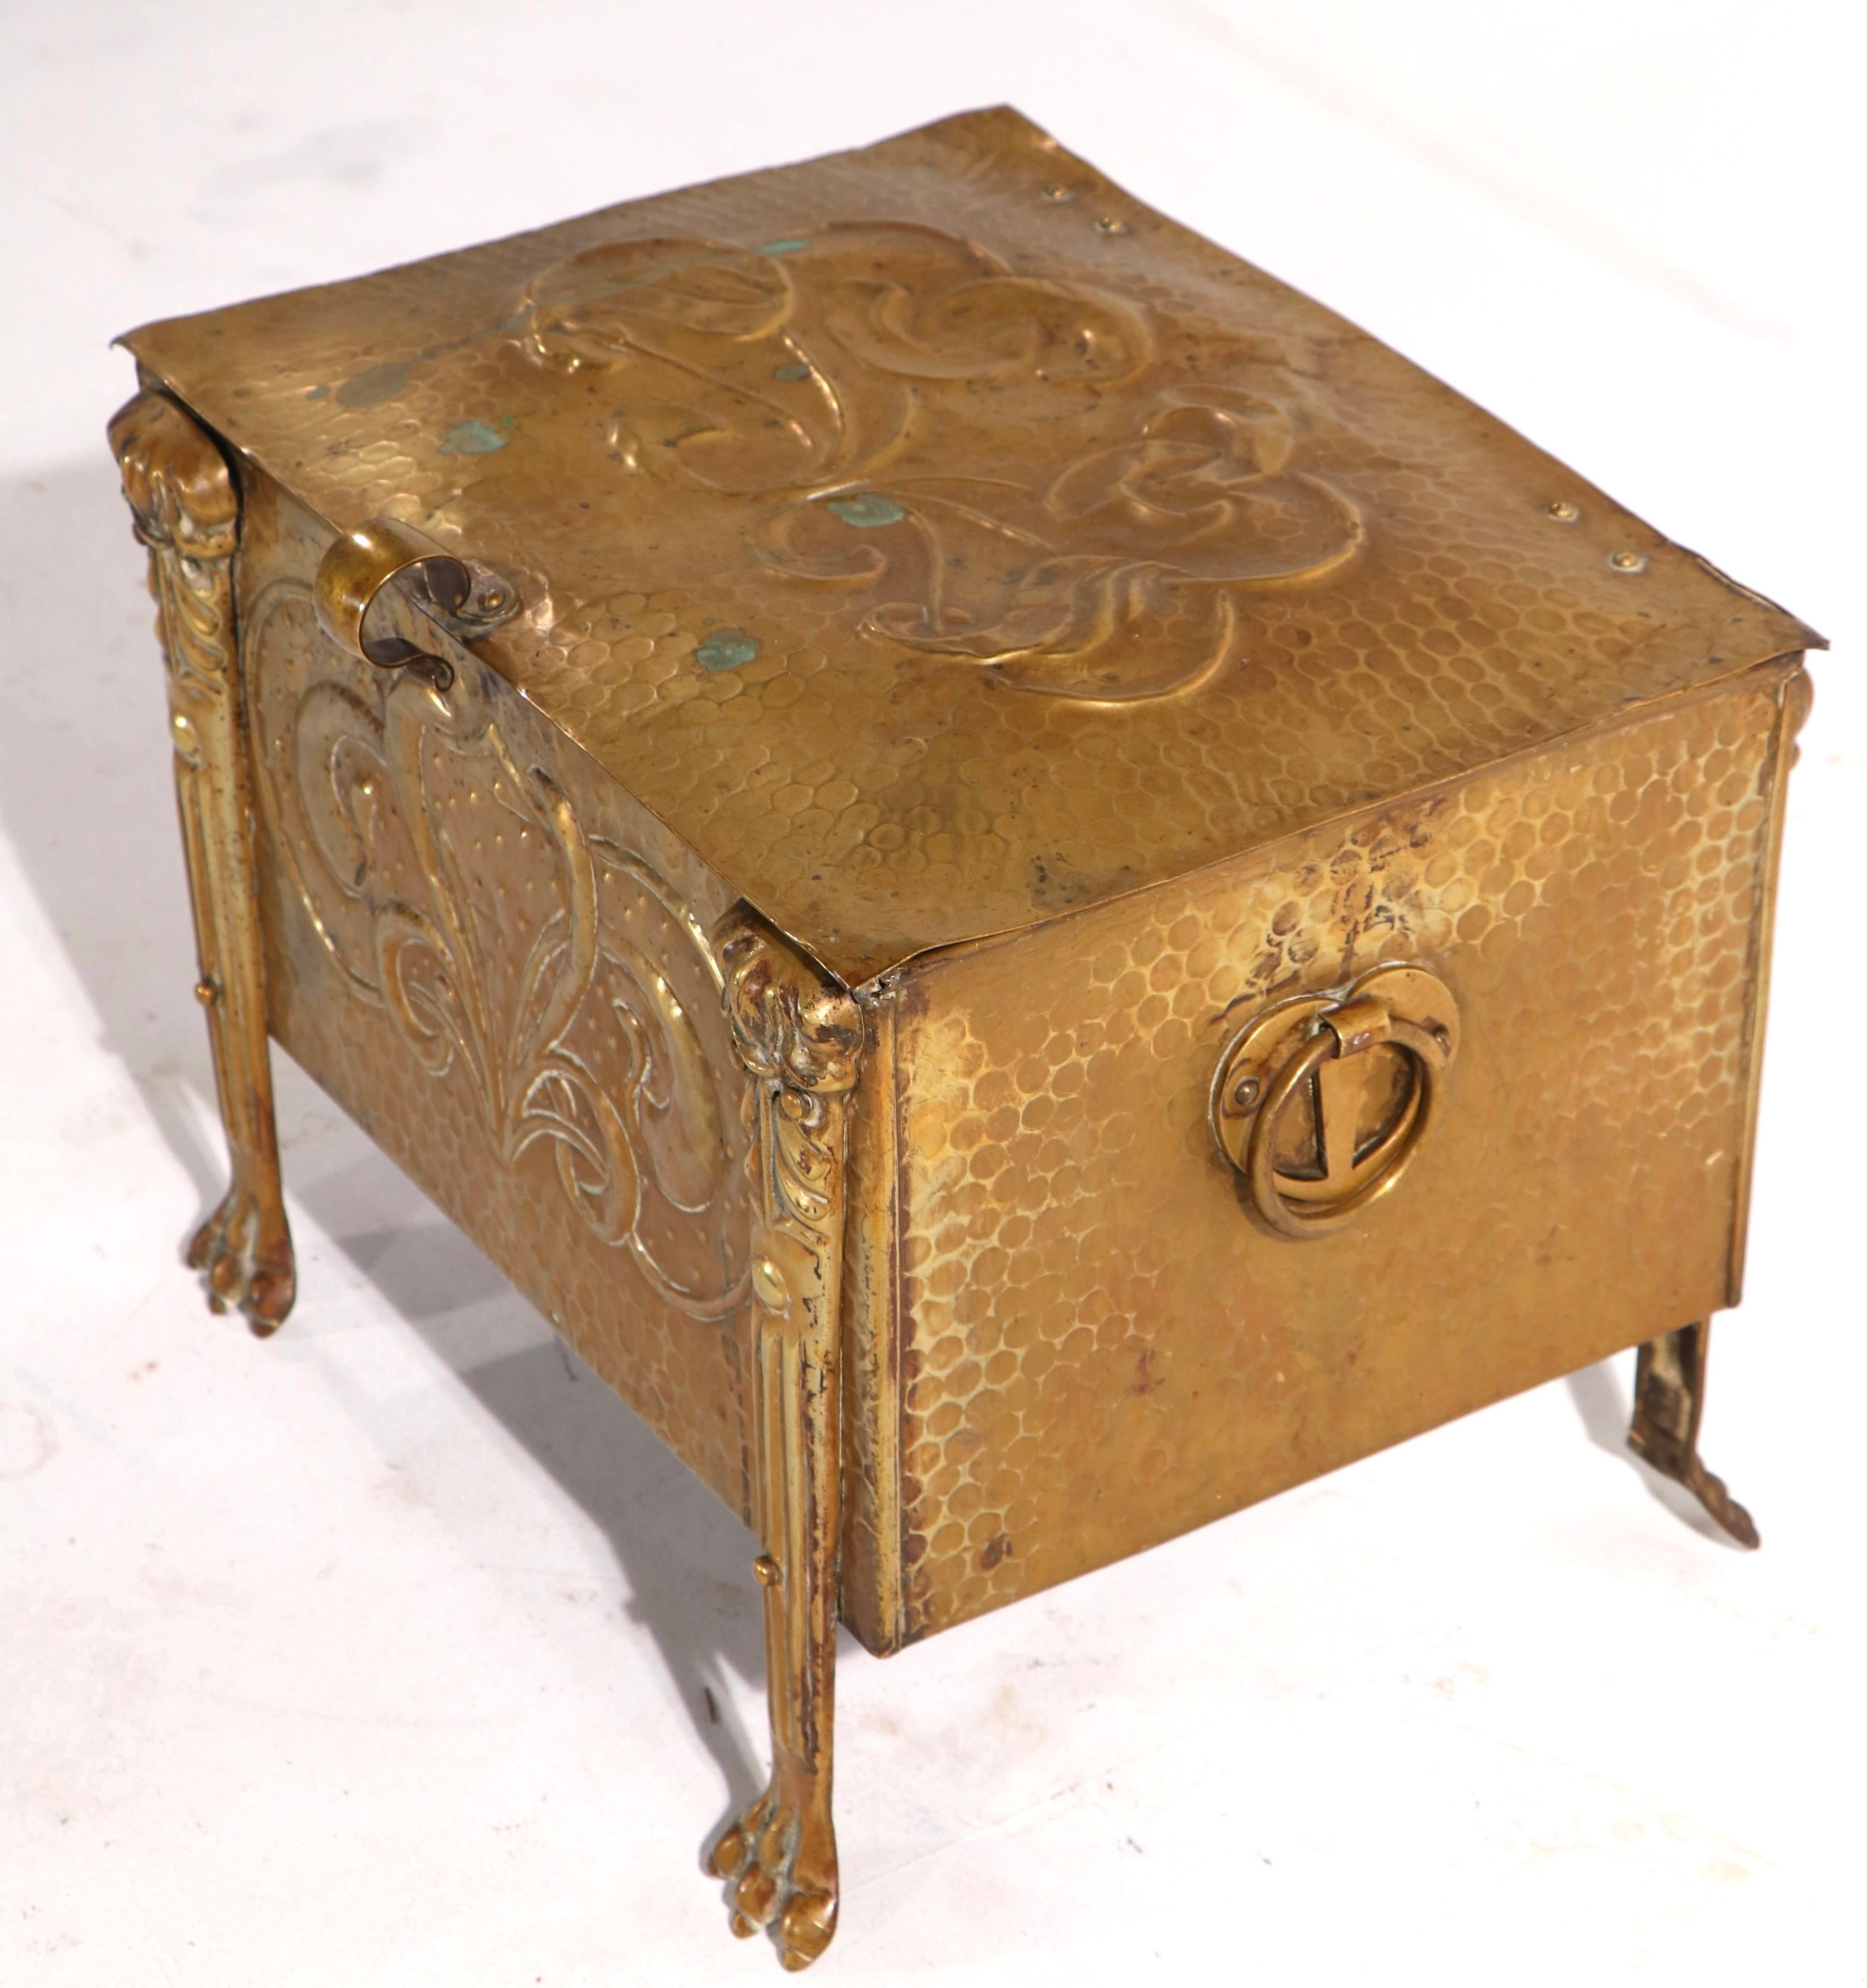 Repoussé 19th C Art Nouveau Arts and Crafts Coal Wood Box in Repousse Brass